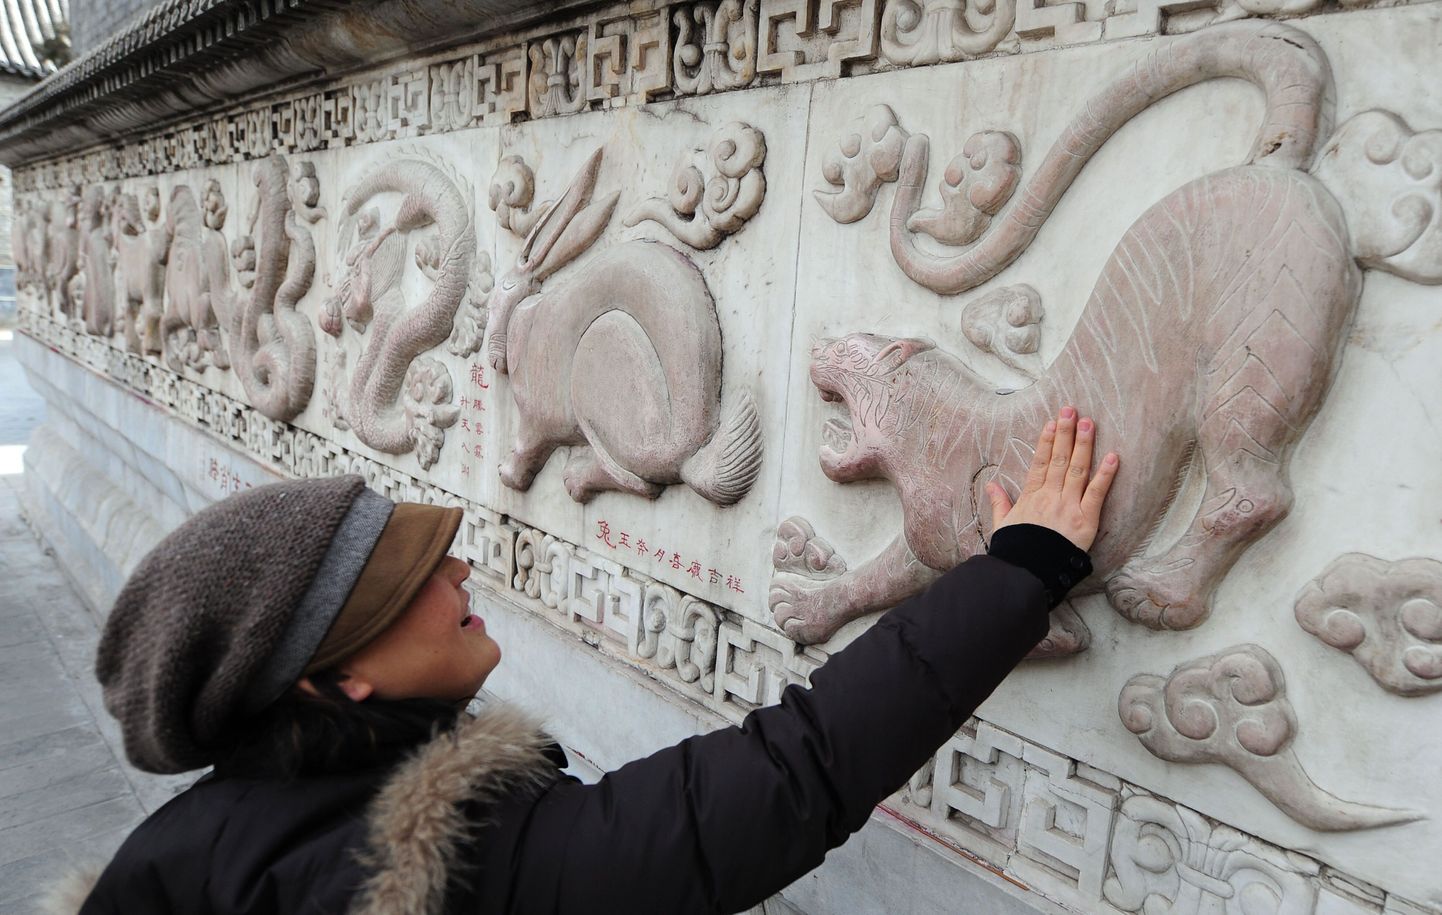 Pildil uuristab turist Hiina horoskoobimärke esindavaid loomi kujutavat reljeefi.